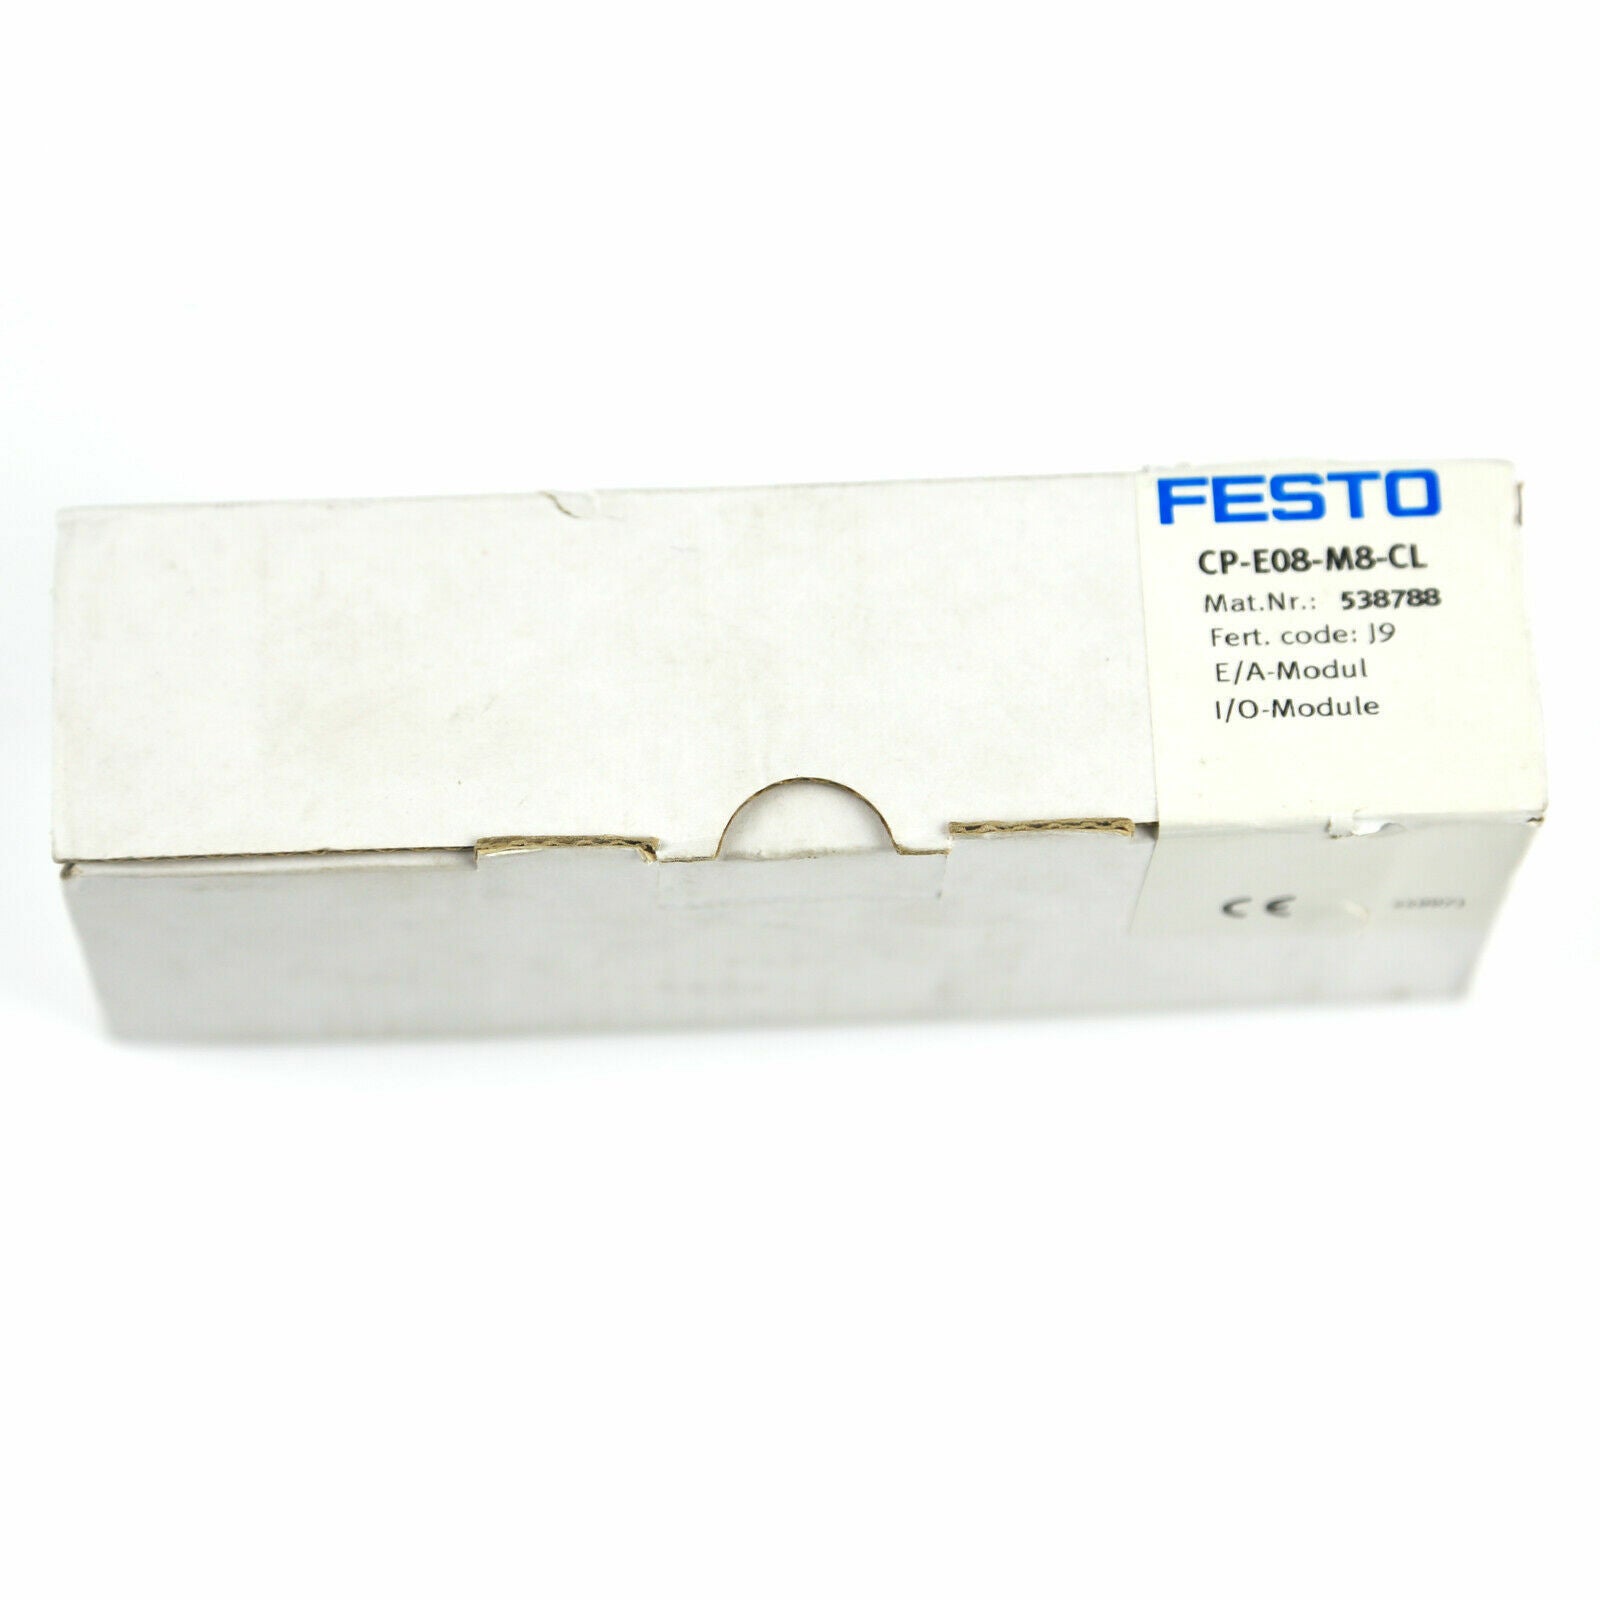 FESTO CP-E08-M8-CL 538788 Module